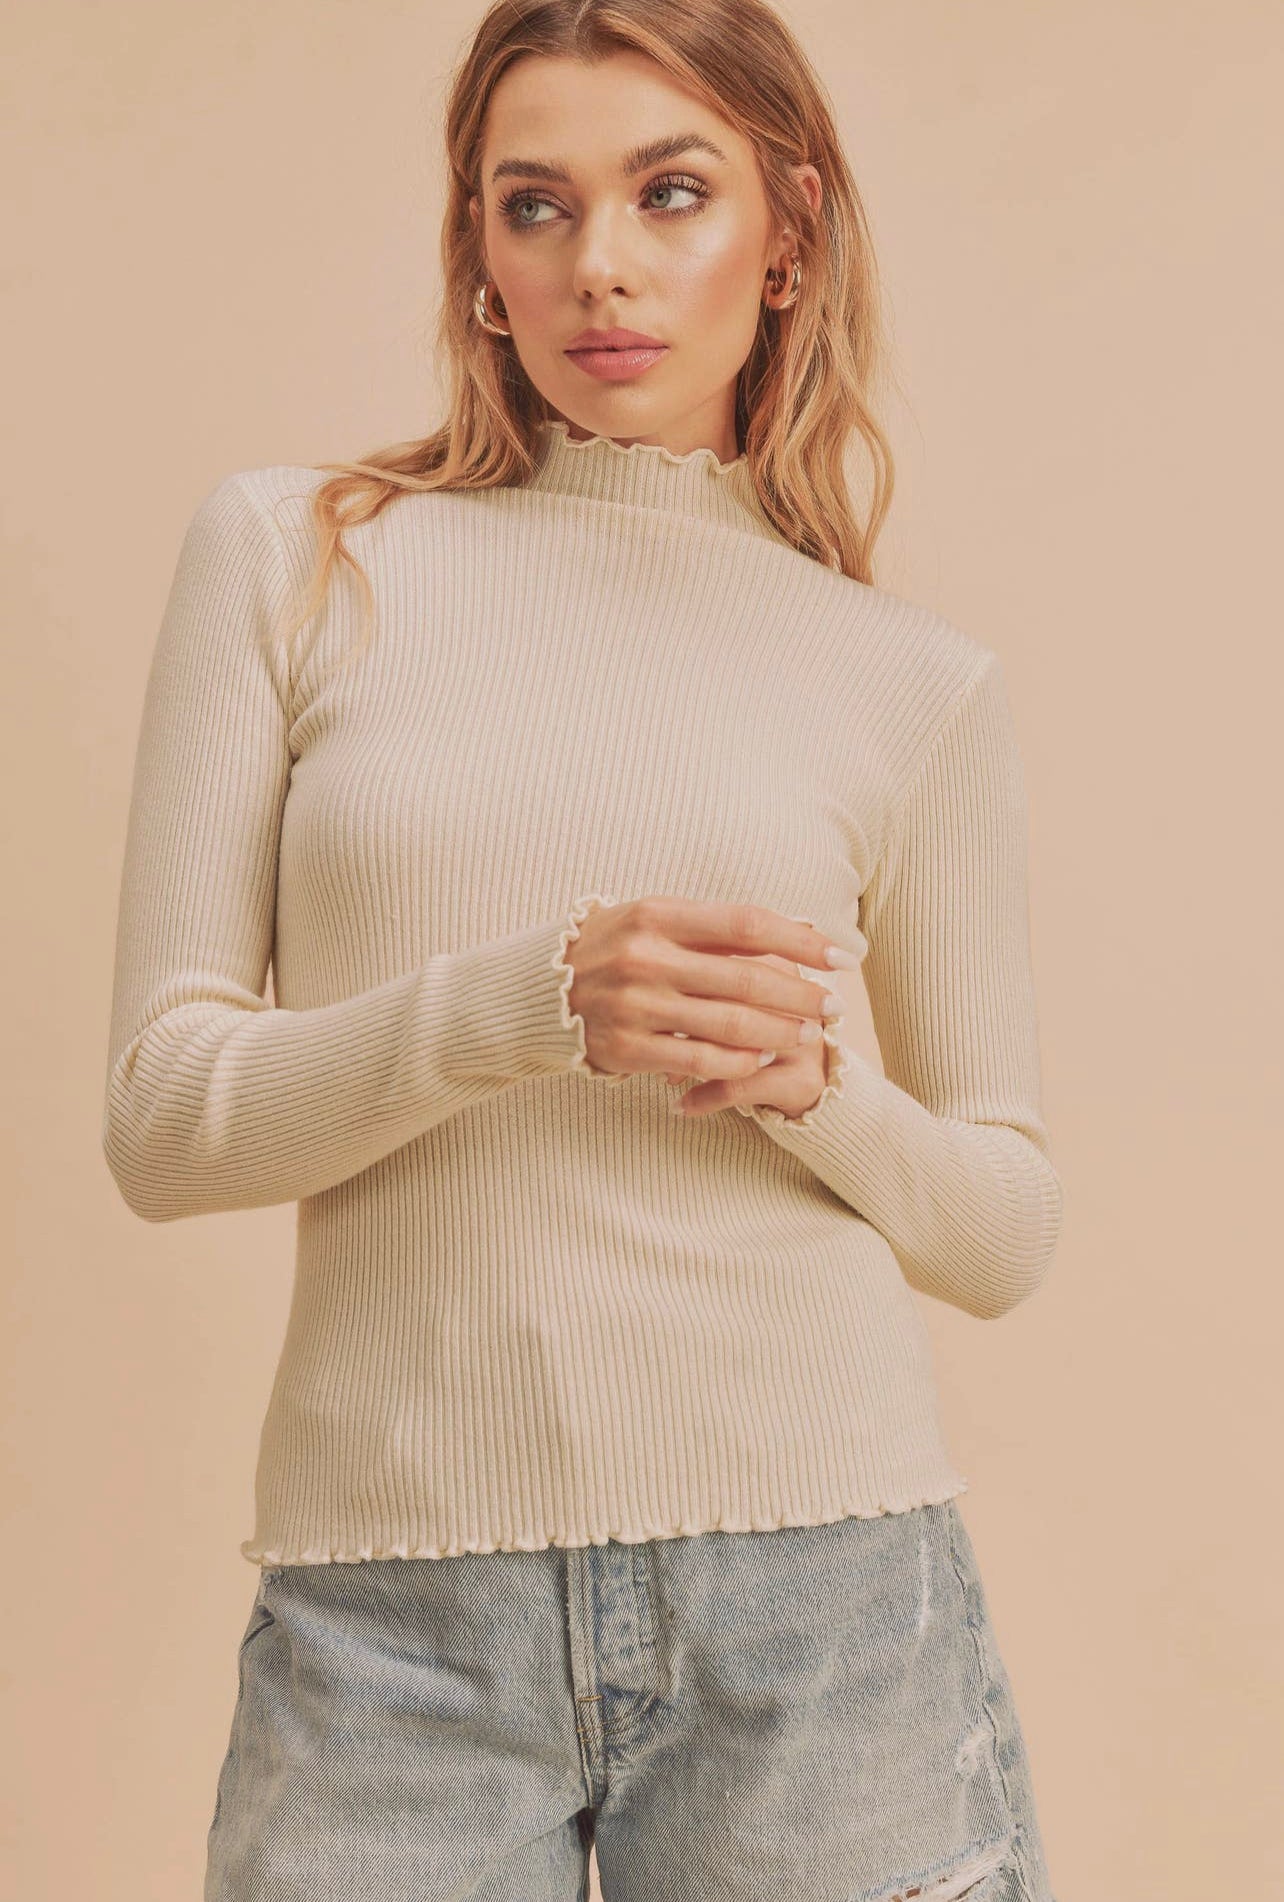 oat knit sweater